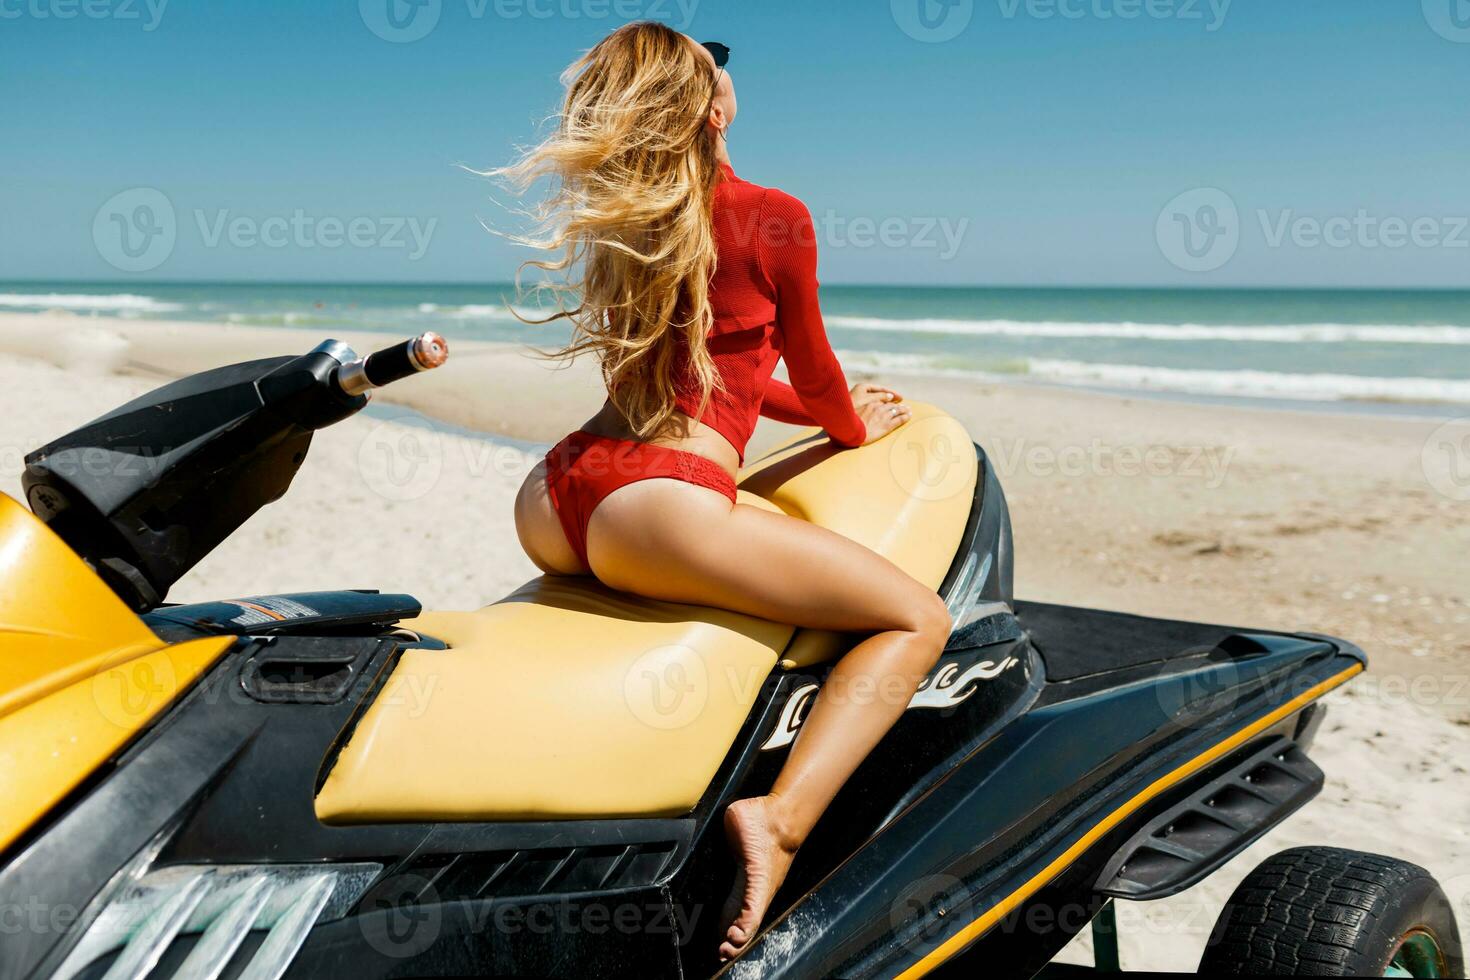 ver desde espalda de sexy bronceado mujer bikini modelo a tropical arena playa. glamour niña en traje de baño en el agua scooter. foto